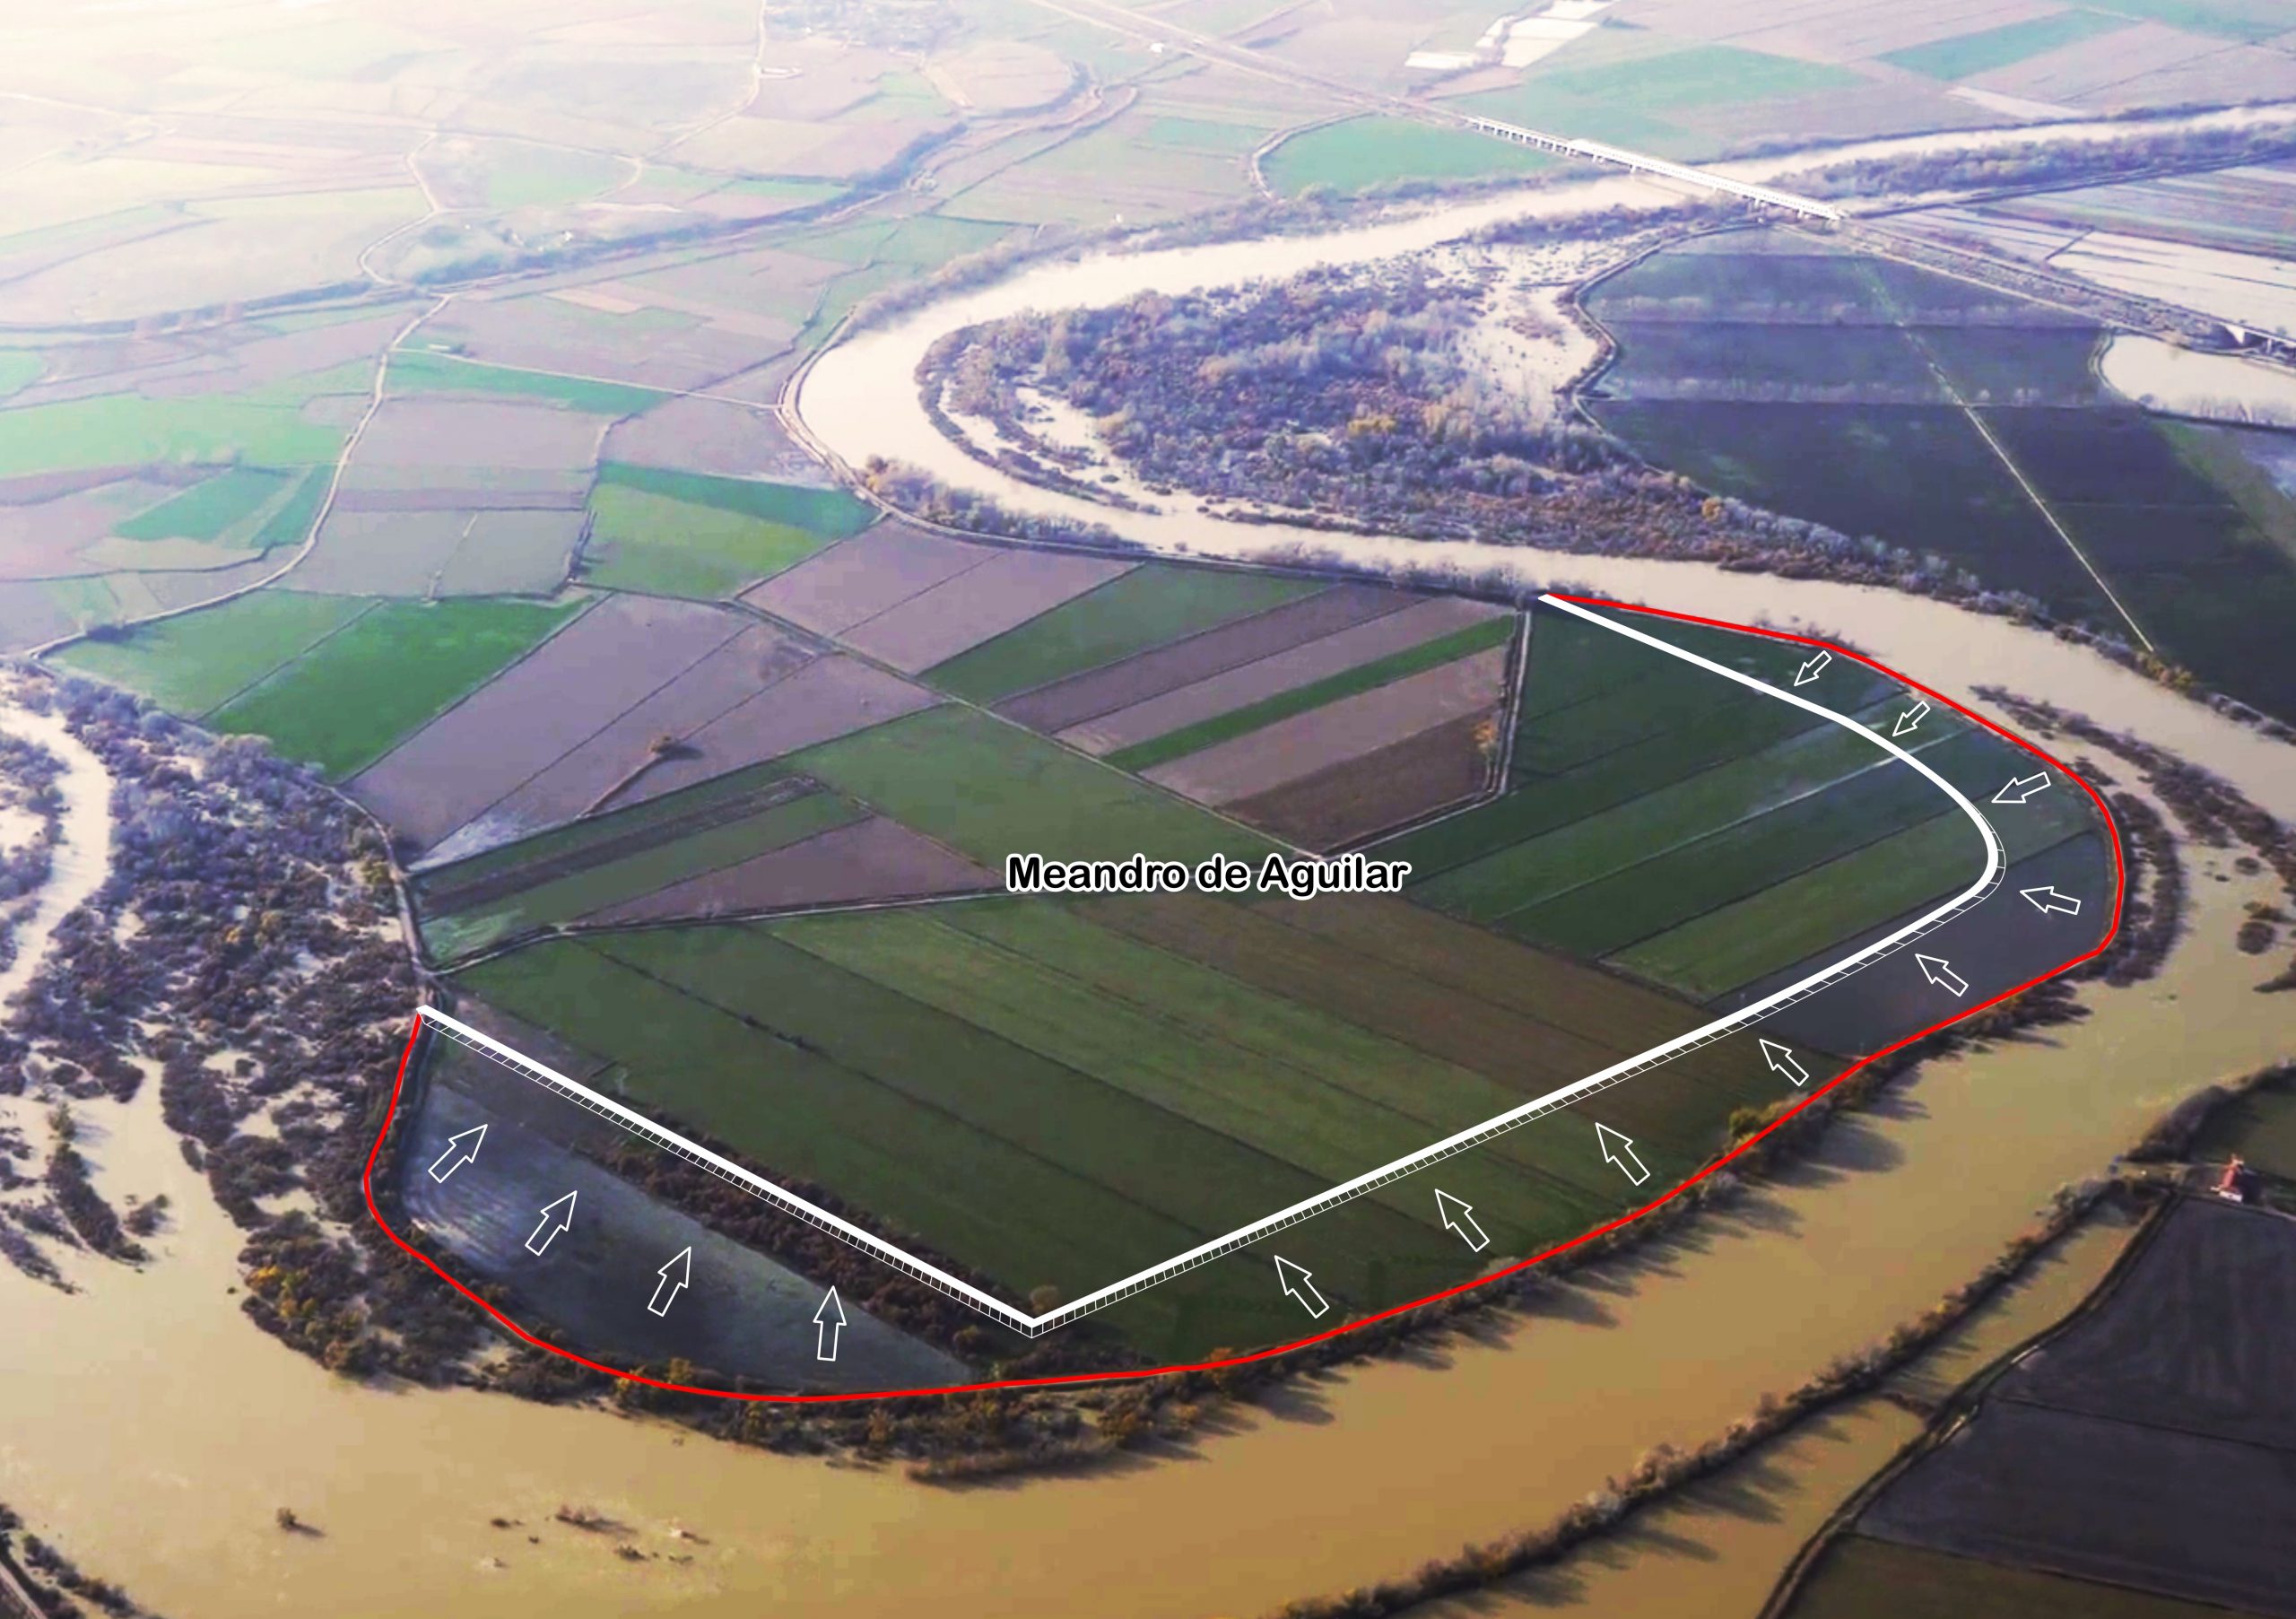 Infografía del proyecto de retranqueo de la mota del meandro de Aguilar (Fuentes de Ebro, Zaragoza) para ampliar el espacio fluvial. Fase 1 del proyecto de adecuación de la zona 2 LIFE Ebro Resilience P1